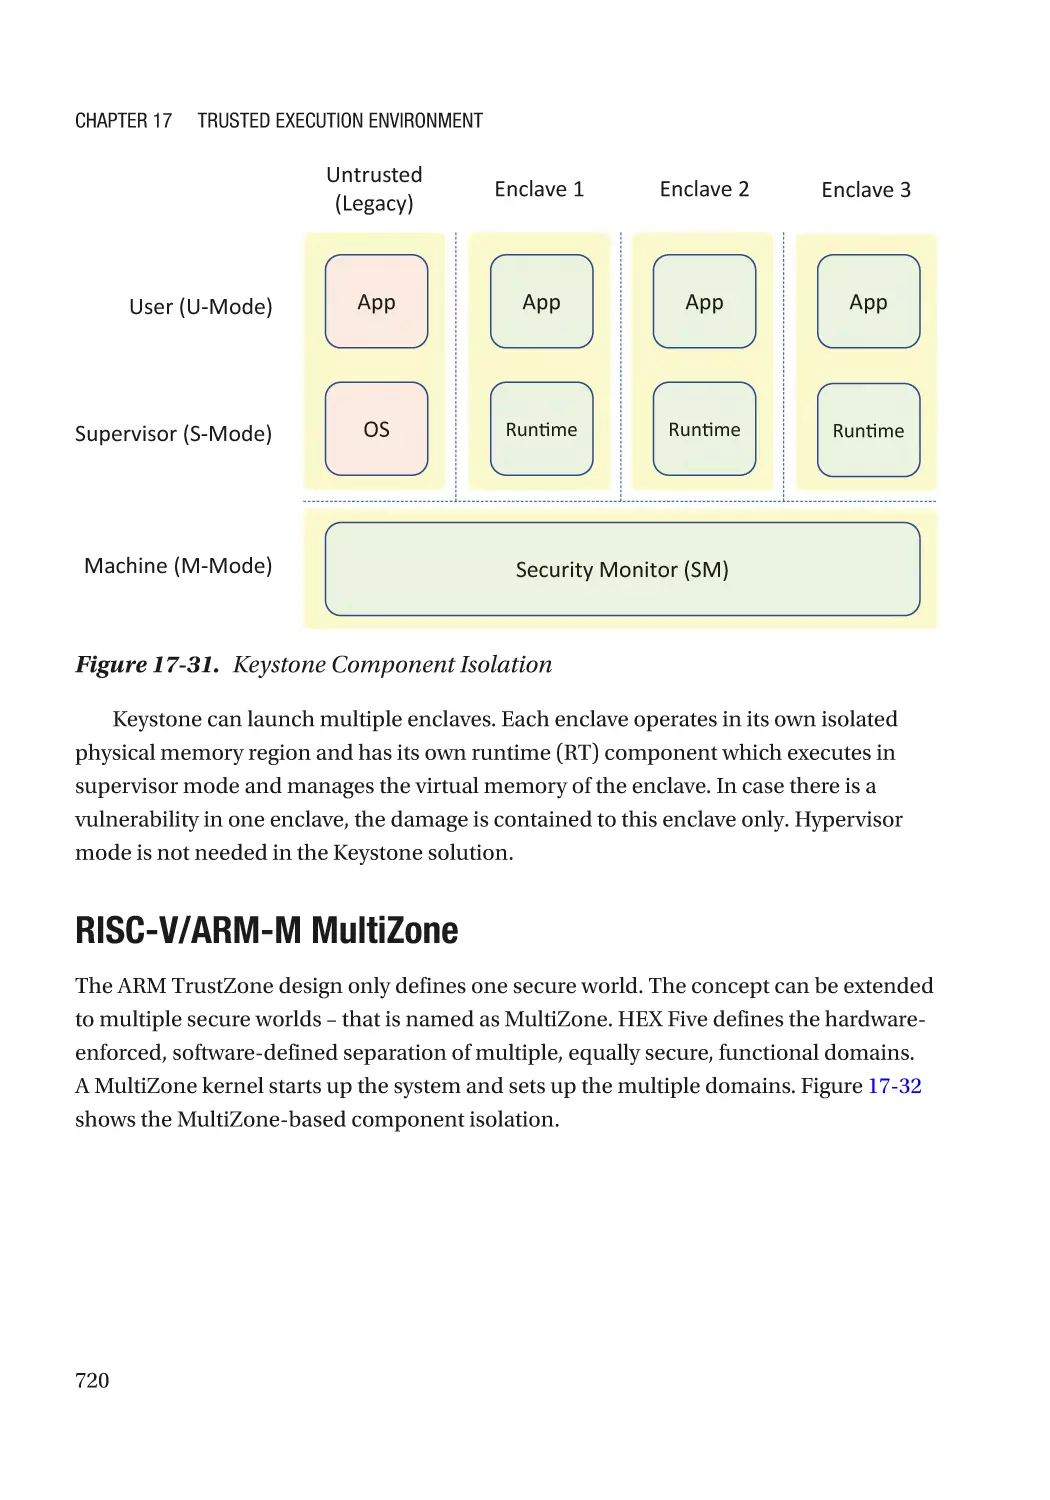 RISC-V/ARM-M MultiZone